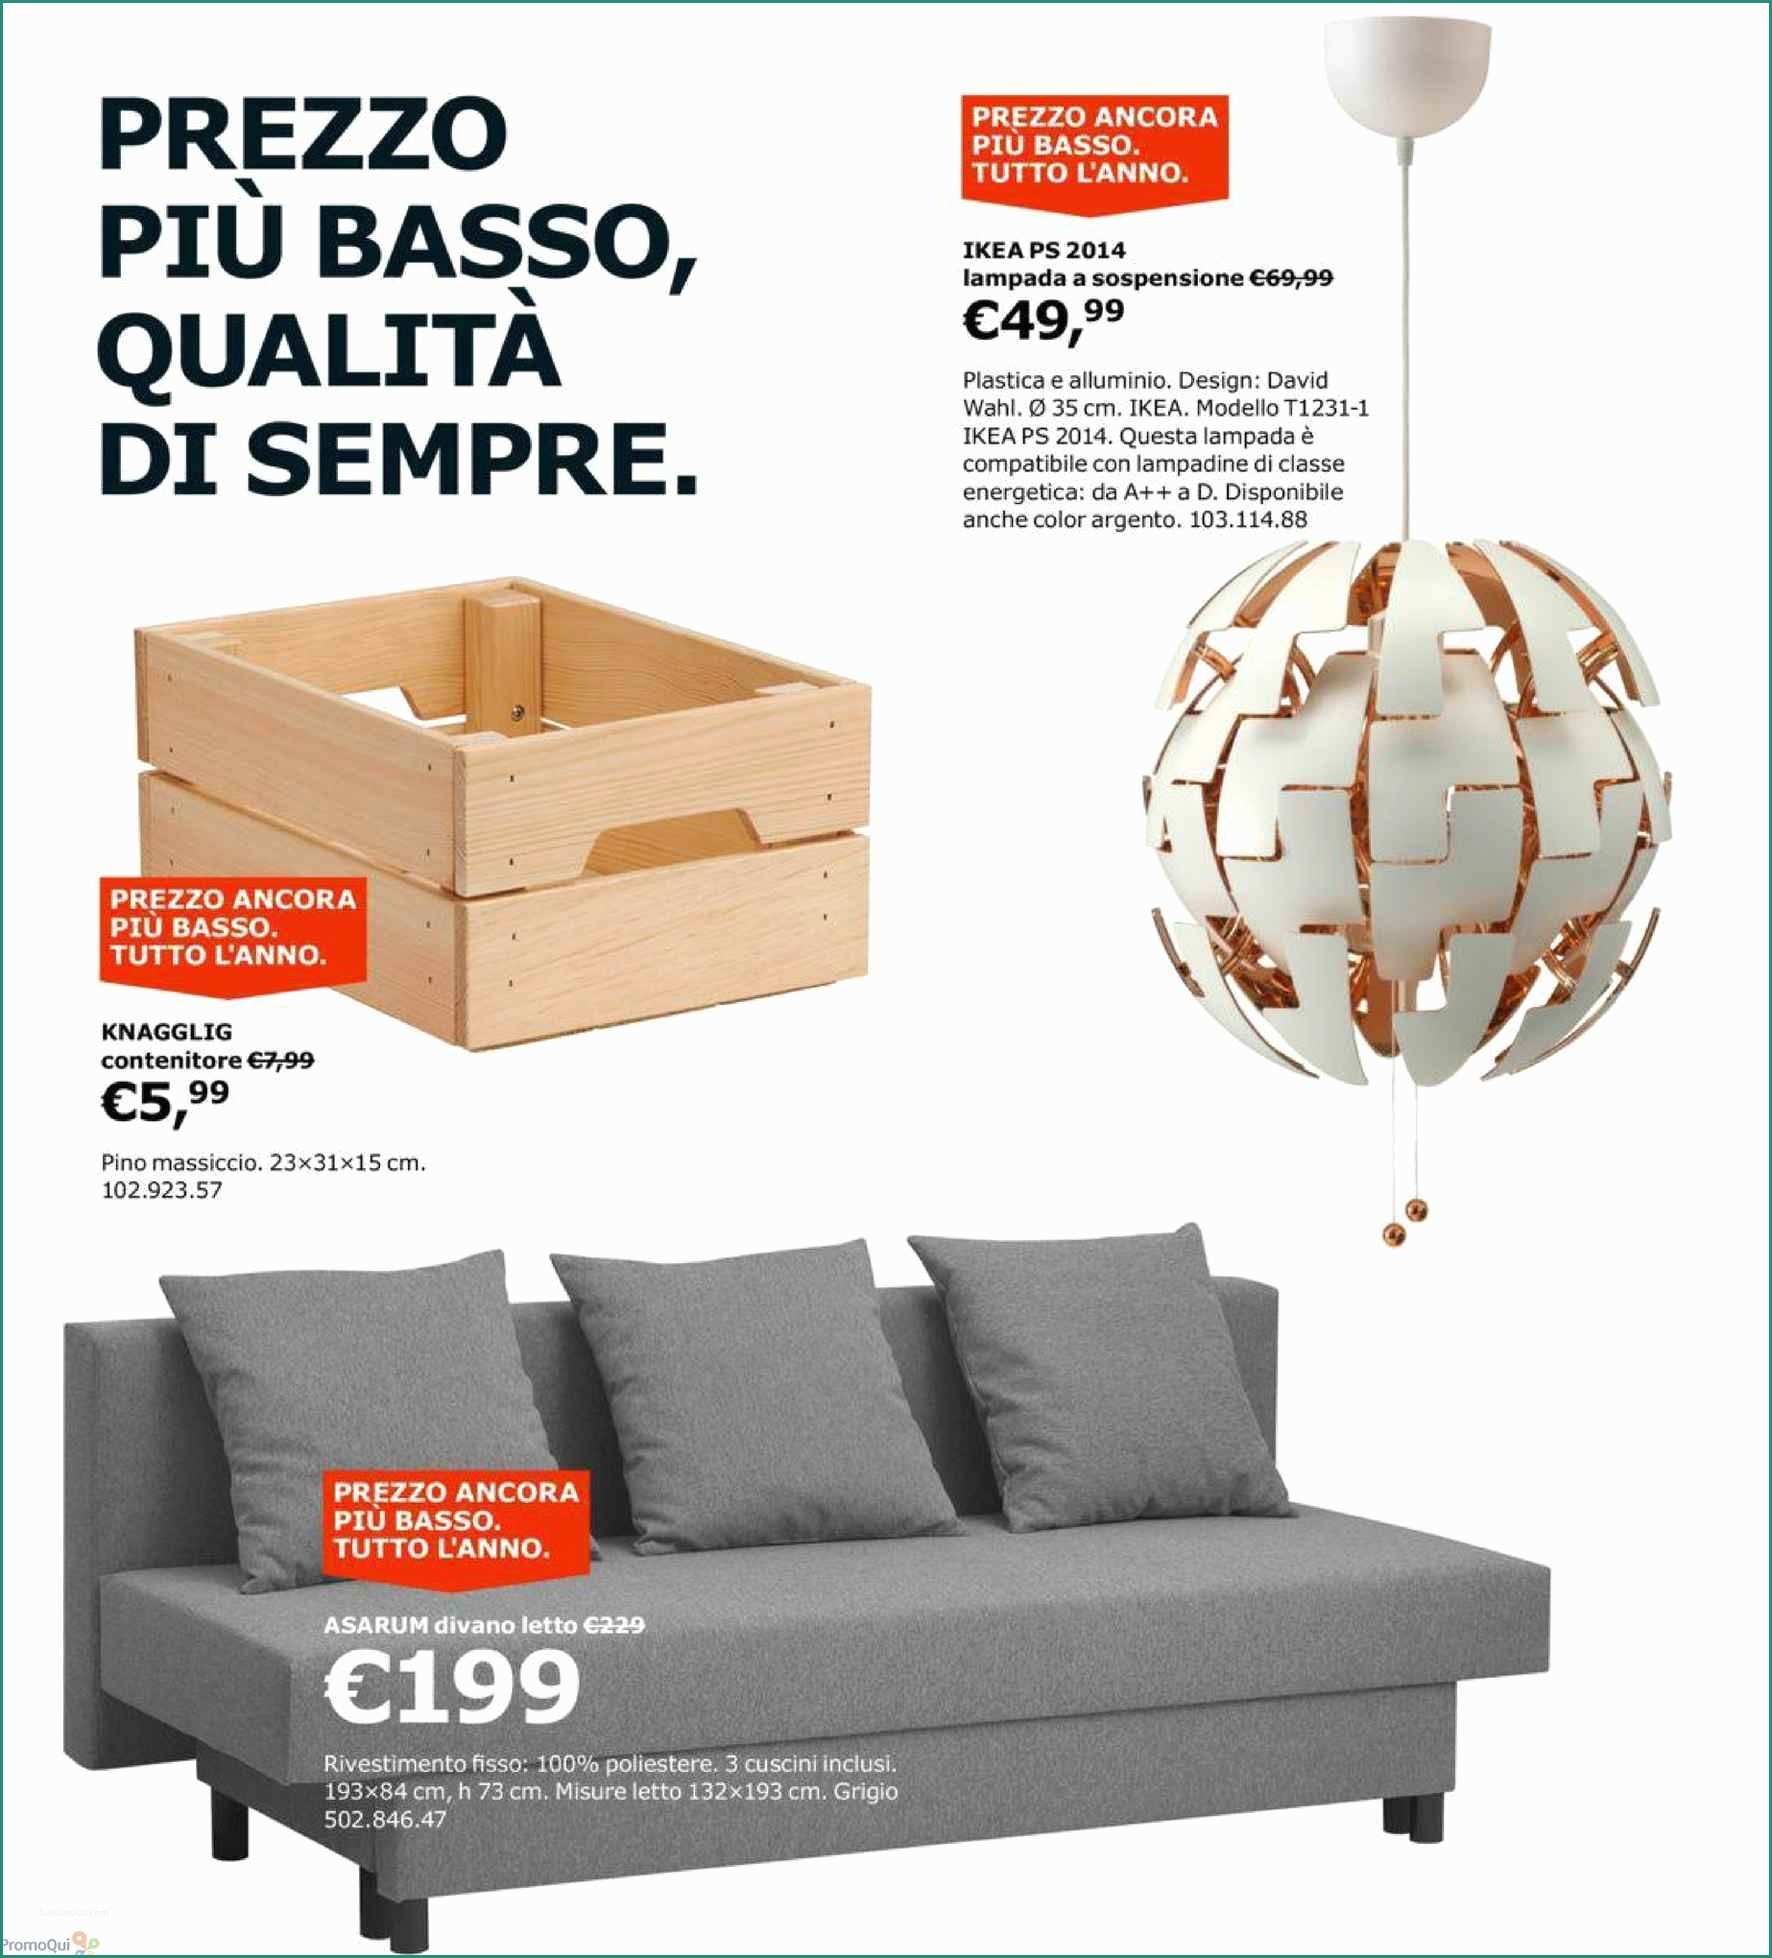 Divano orlando Mondo Convenienza E Divani Letto Angolari Ikea Design Per La Casa Friheten Divano Letto